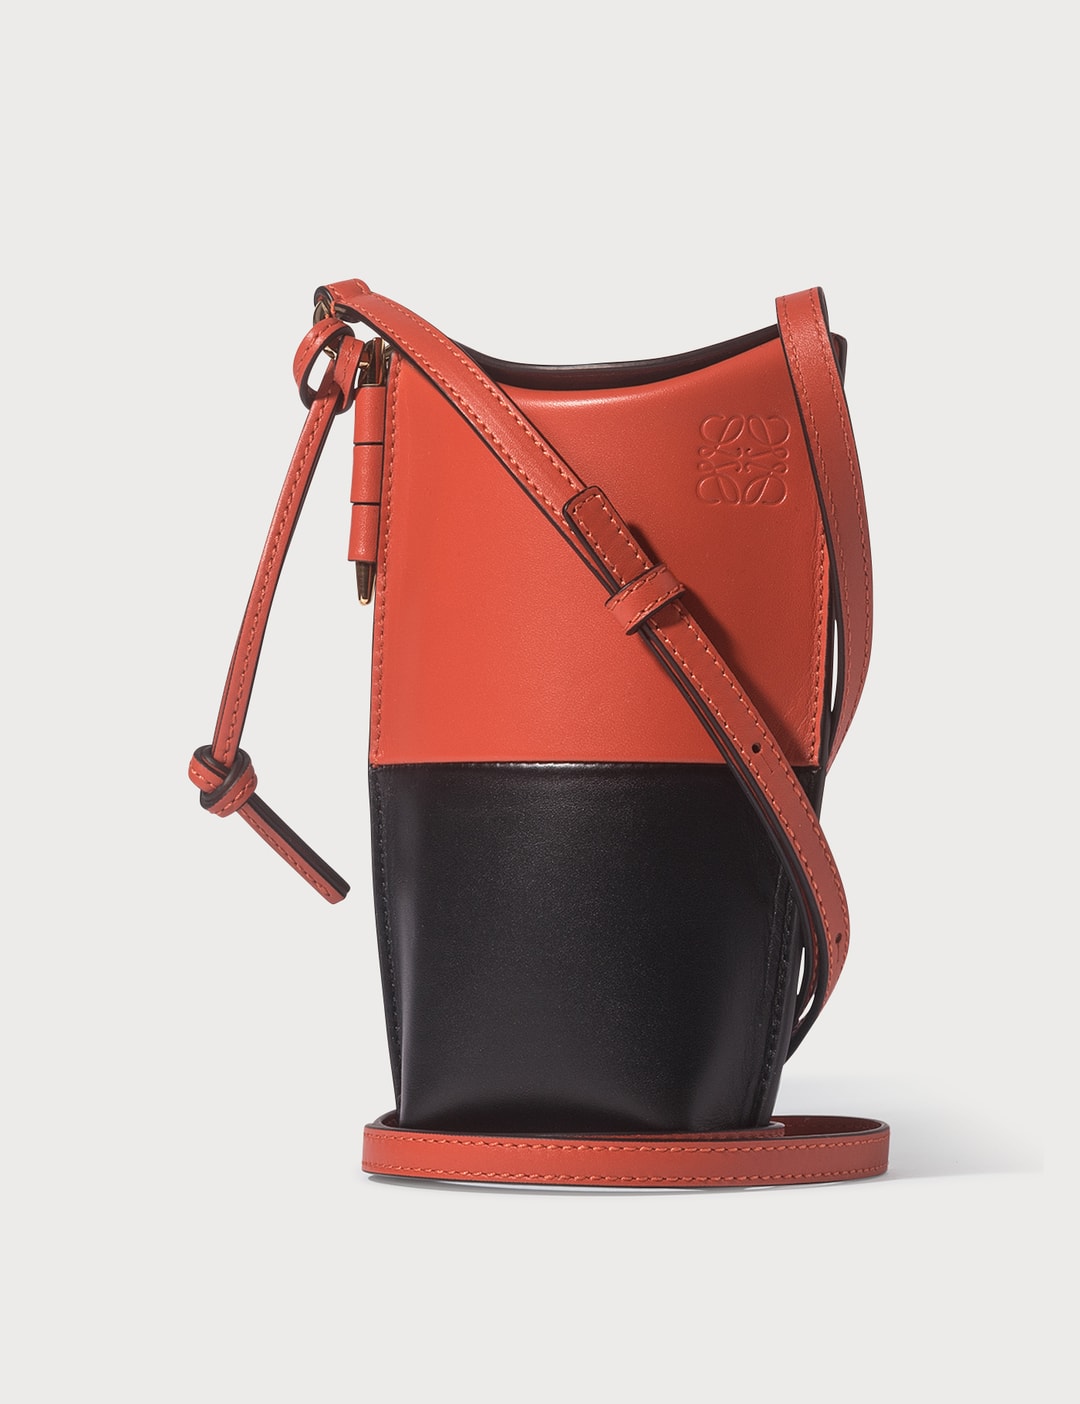 Loewe 2019 Colorblock Gate Pocket Shoulder Bag · INTO